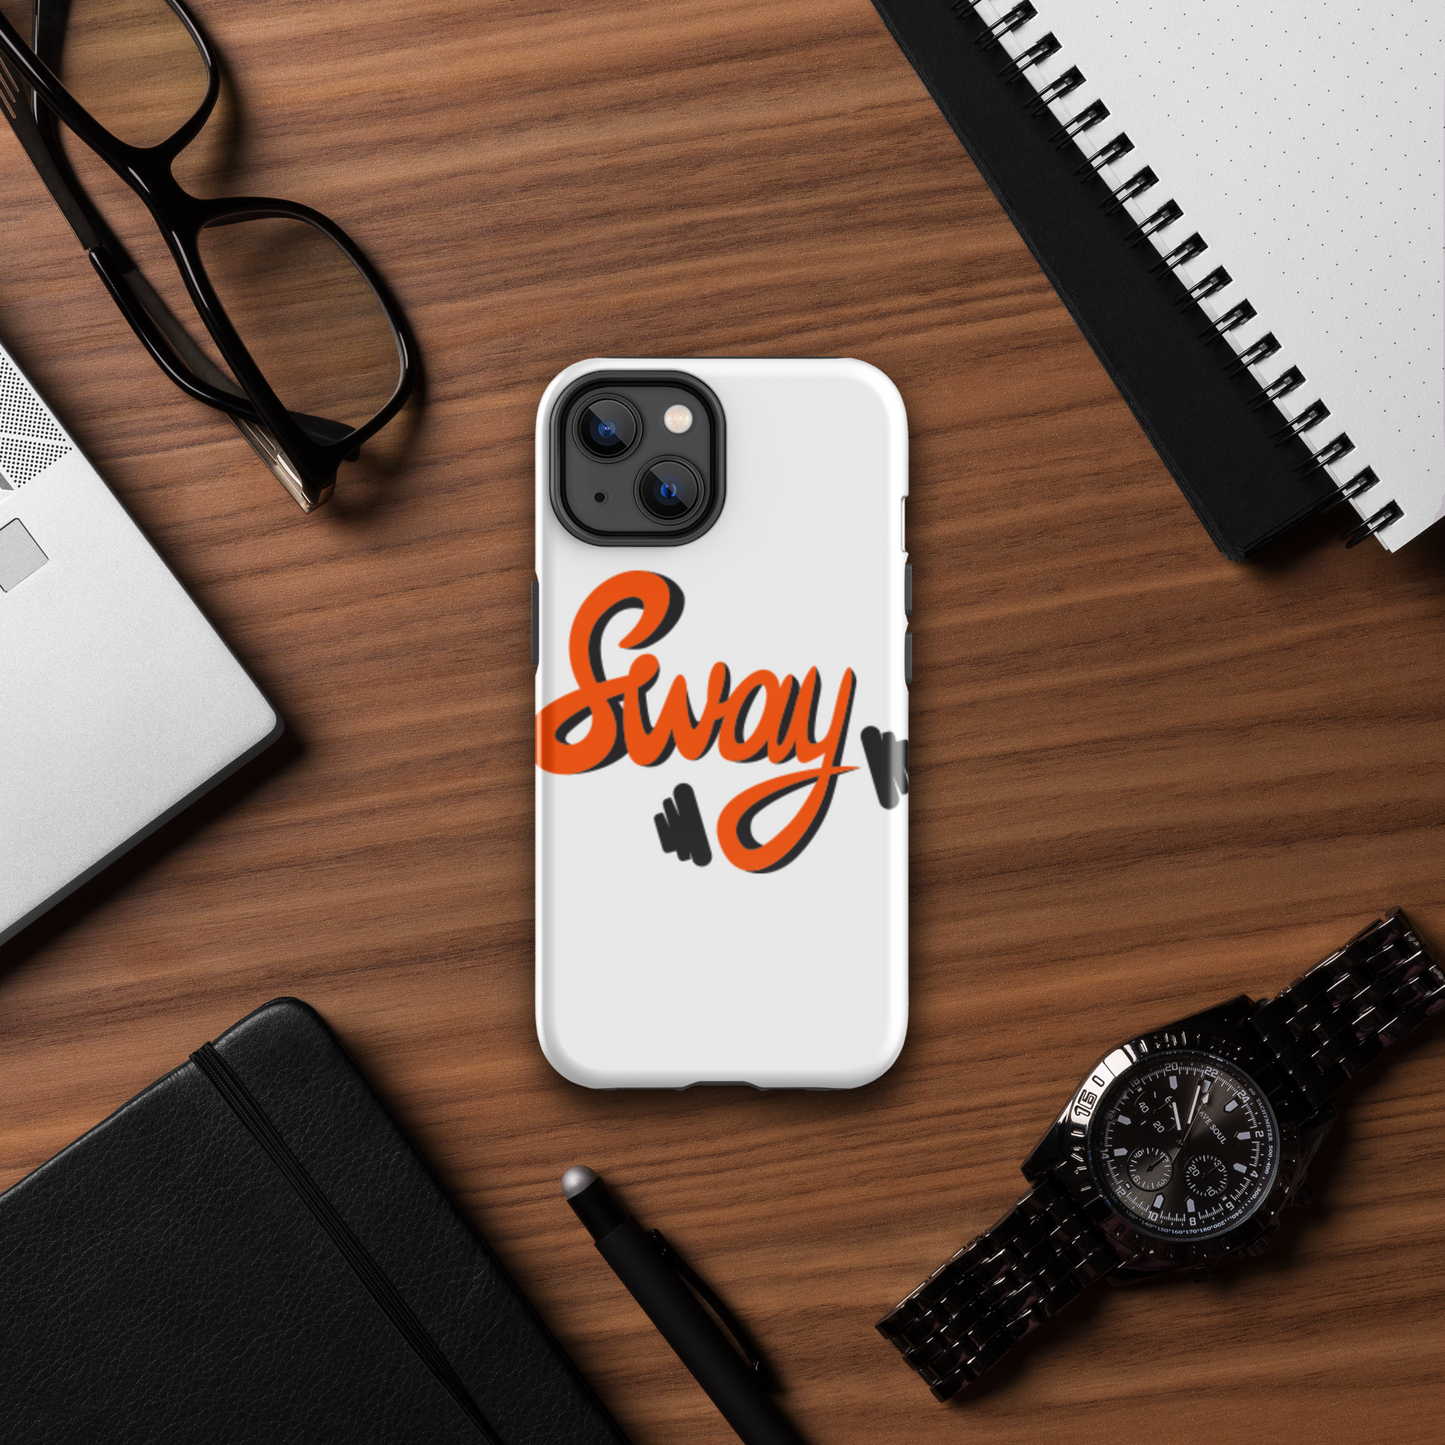 Sway - Cover iPhone rigida